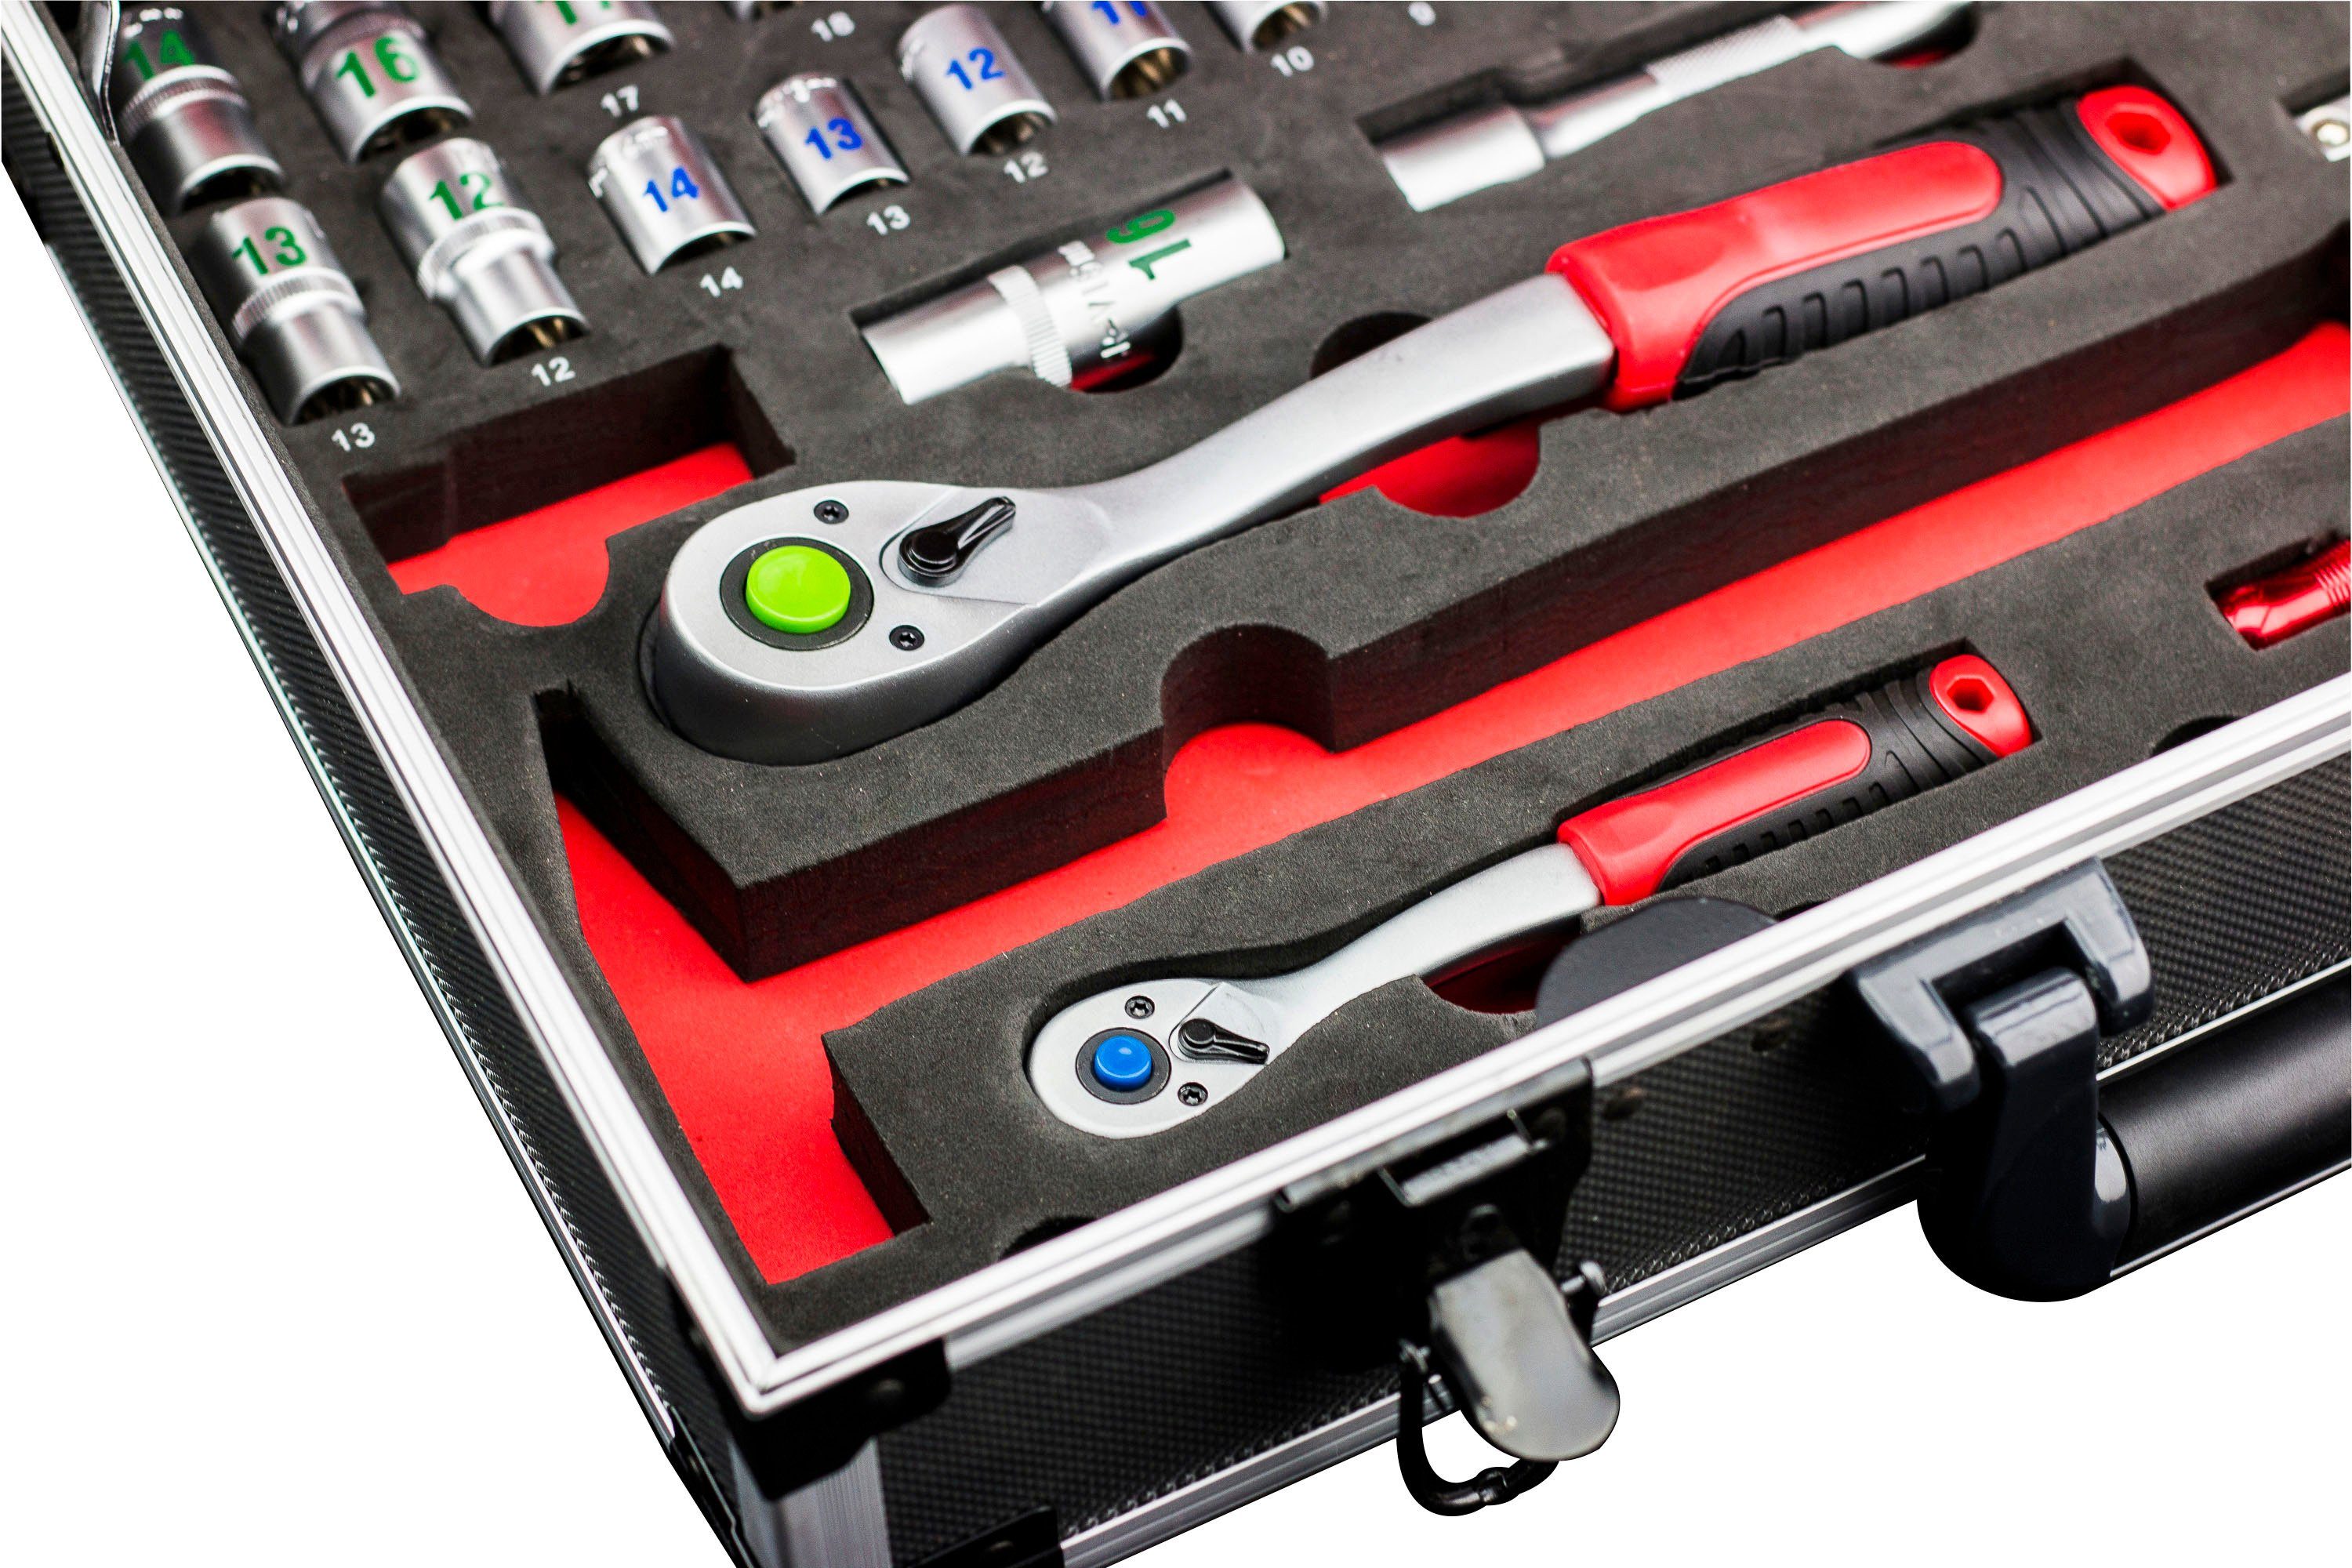 meister Werkzeugset Profi / von 8973750, mit Qualitätswerkzeug Knipex Wera, Werkzeugkoffer 131-teilig, & Alu-Koffer